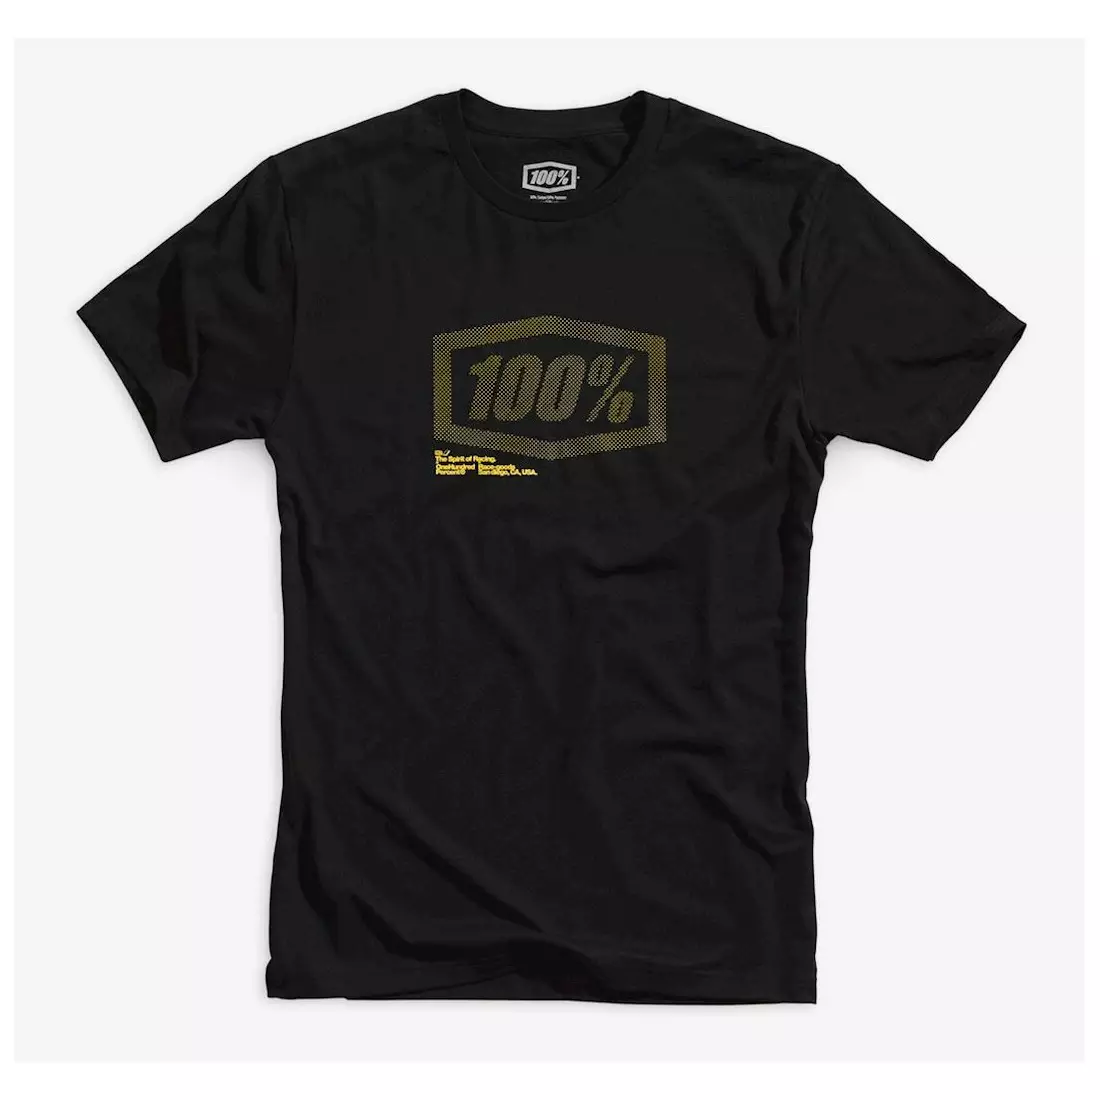 100% koszulka męska krótki rękaw occult black STO-32096-001-11